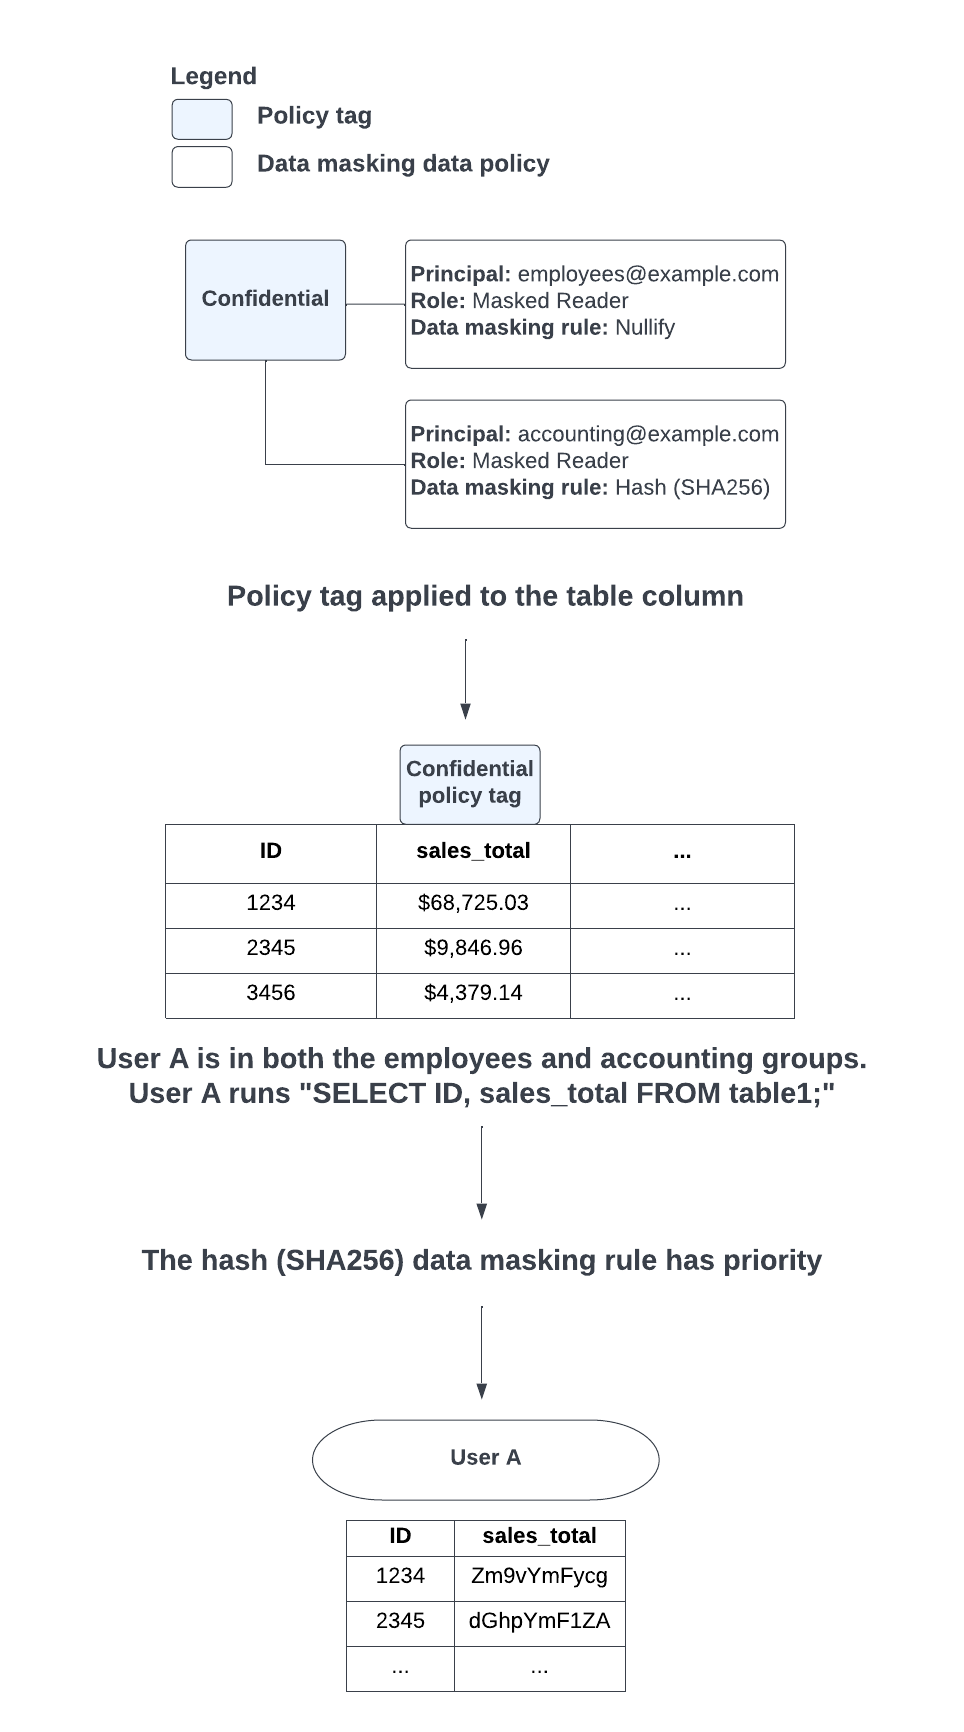 Cuando hay un conflicto entre la aplicación de las reglas de enmascaramiento de datos de anulación y de hash (SHA-256) debido a los grupos en los que se encuentra un usuario, se prioriza la regla de enmascaramiento de datos de hash (SHA-256).